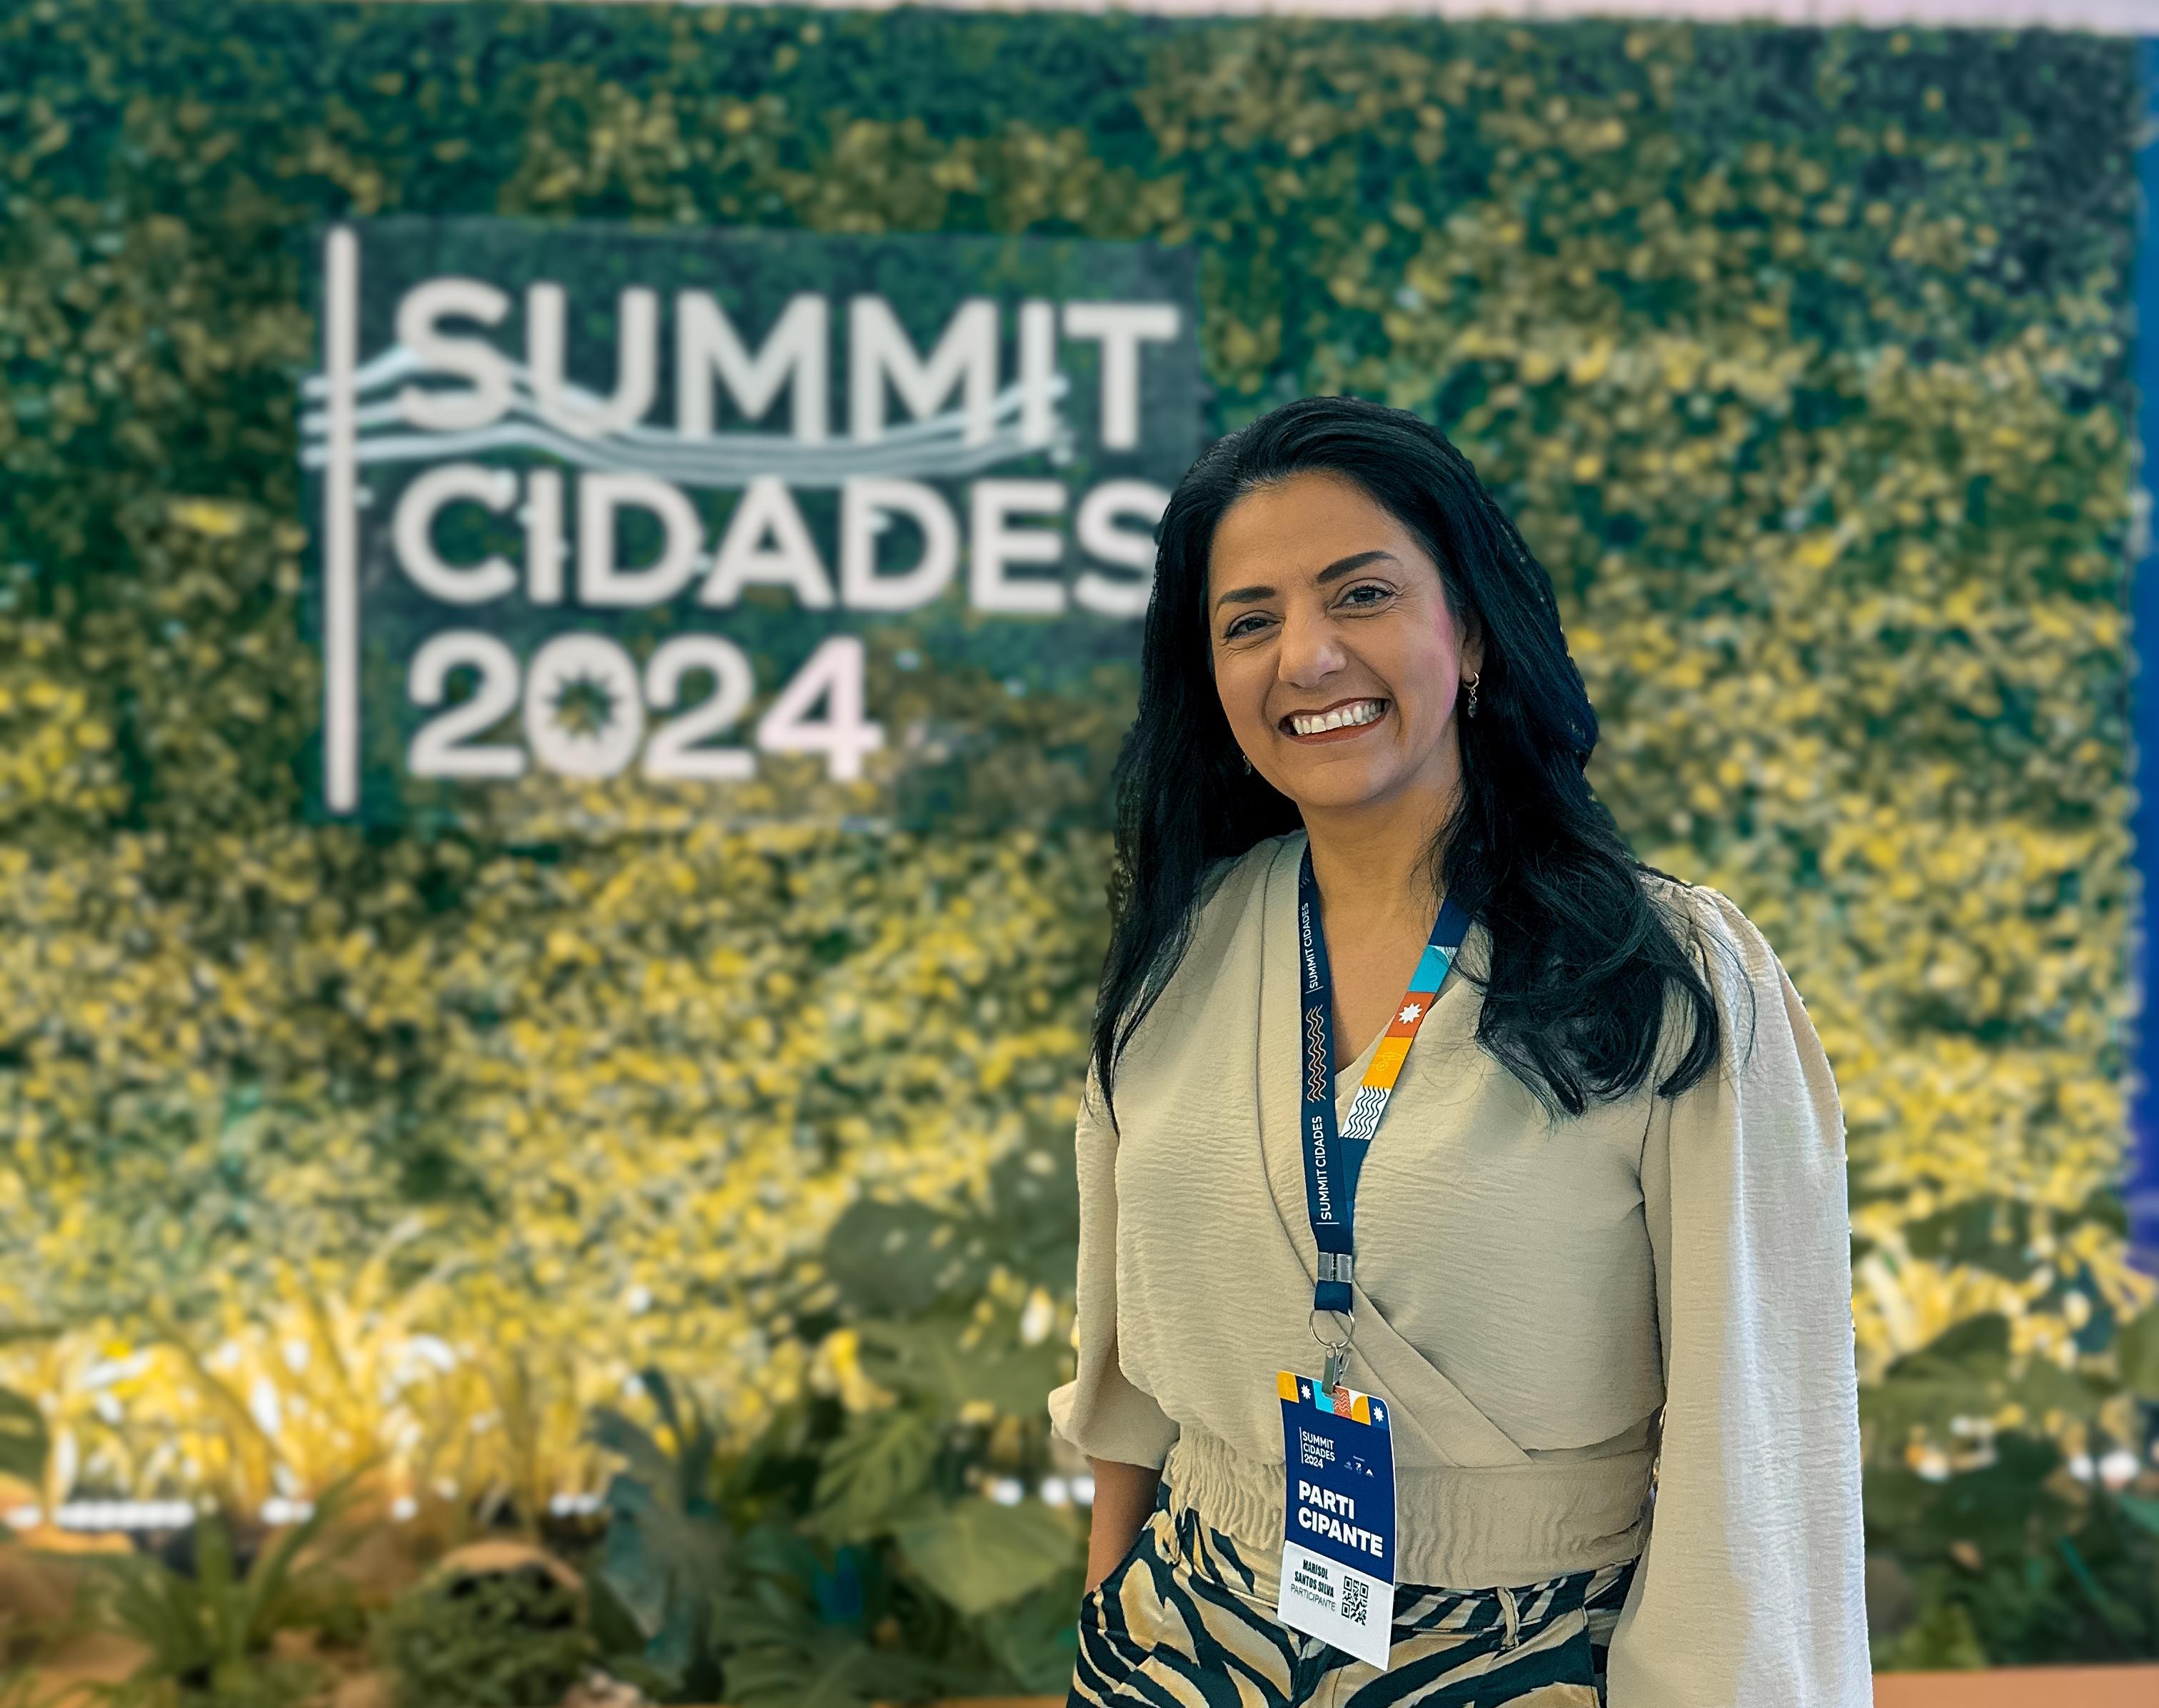 Presidente Marisol Santos representa Caxias do Sul no Summit Cidades 2024